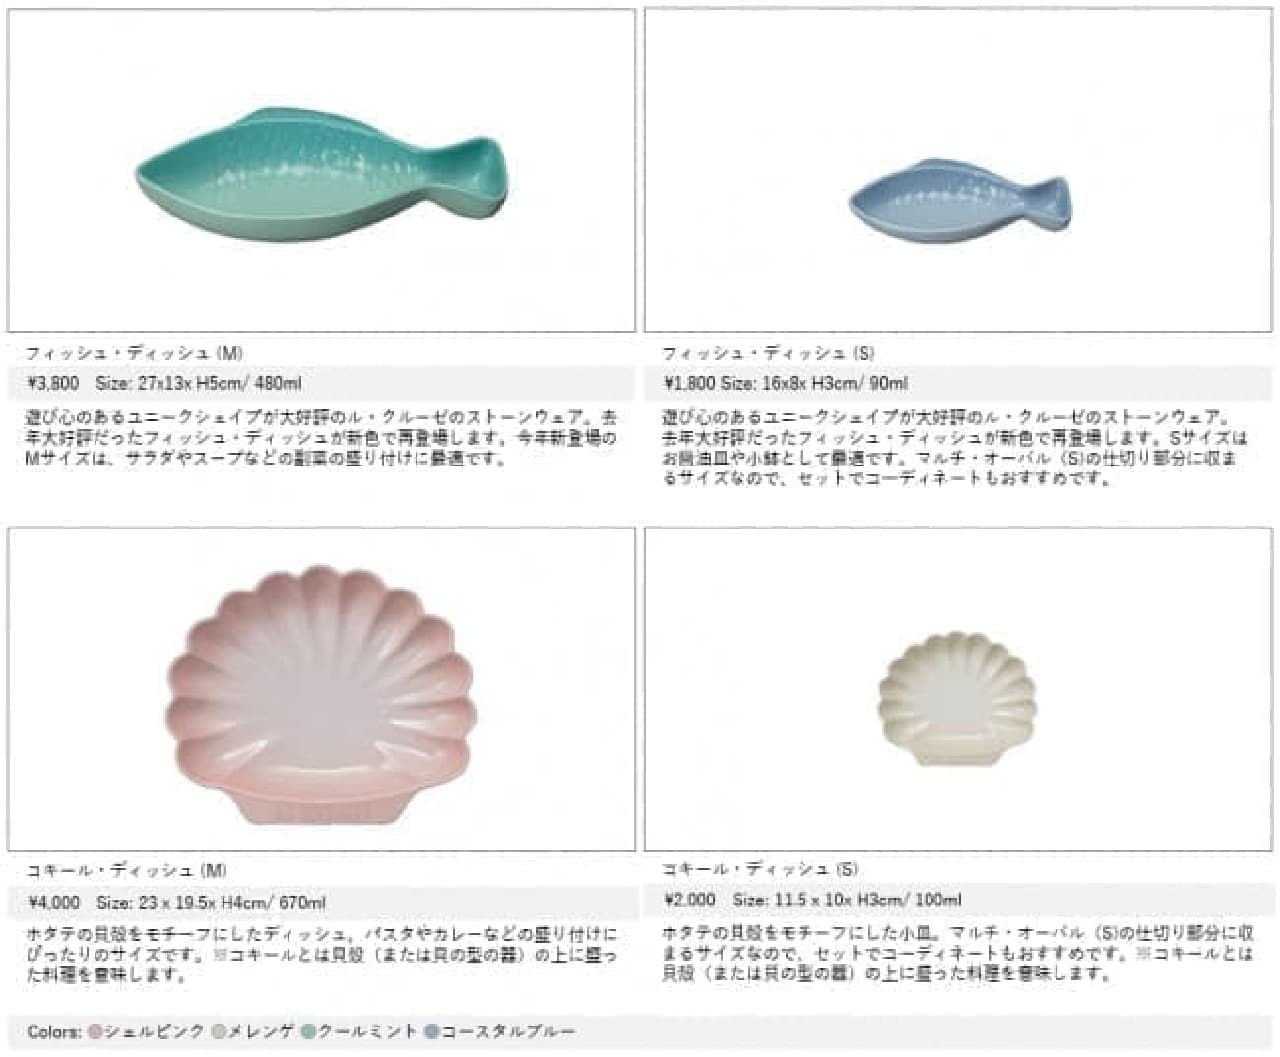 ル・クルーゼ「サマーコレクション」発売 -- 魚型「フィッシュ・ディッシュ」と貝殻型「コキール・ディッシュ」